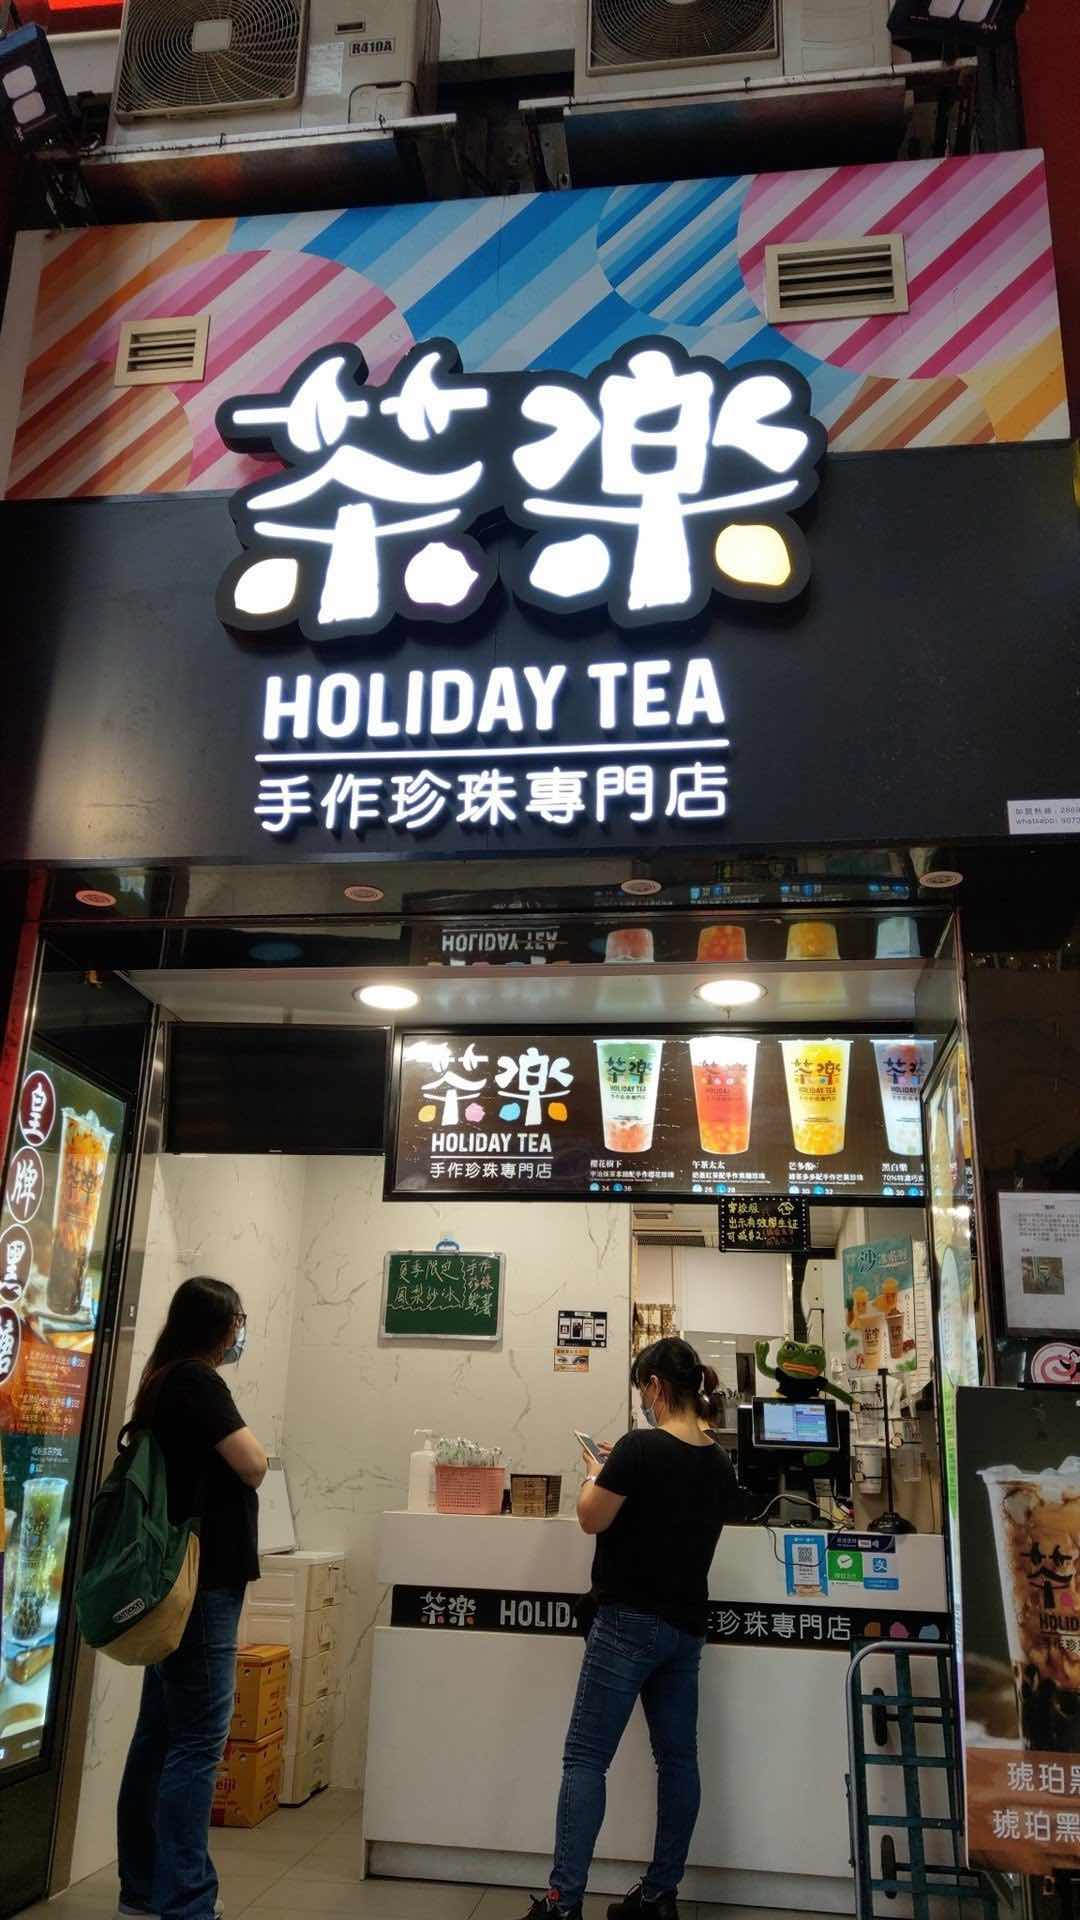 茶樂的特許經營香港區加盟店項目7